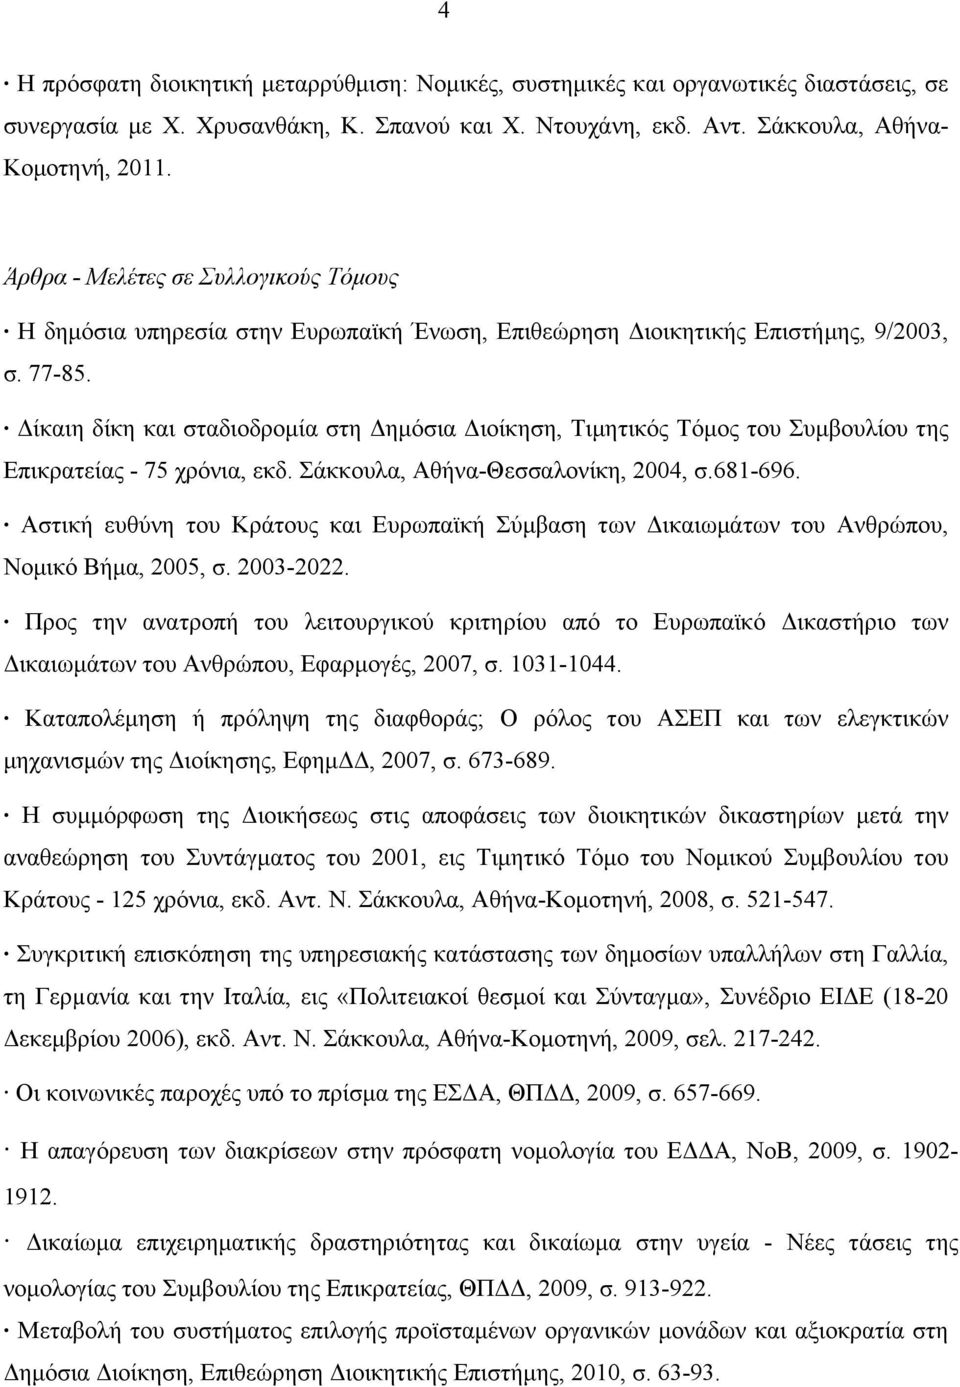 Δίκαιη δίκη και σταδιοδροµία στη Δηµόσια Διοίκηση, Τιµητικός Τόµος του Συµβουλίου της Επικρατείας - 75 χρόνια, εκδ. Σάκκουλα, Αθήνα-Θεσσαλονίκη, 2004, σ.681-696.